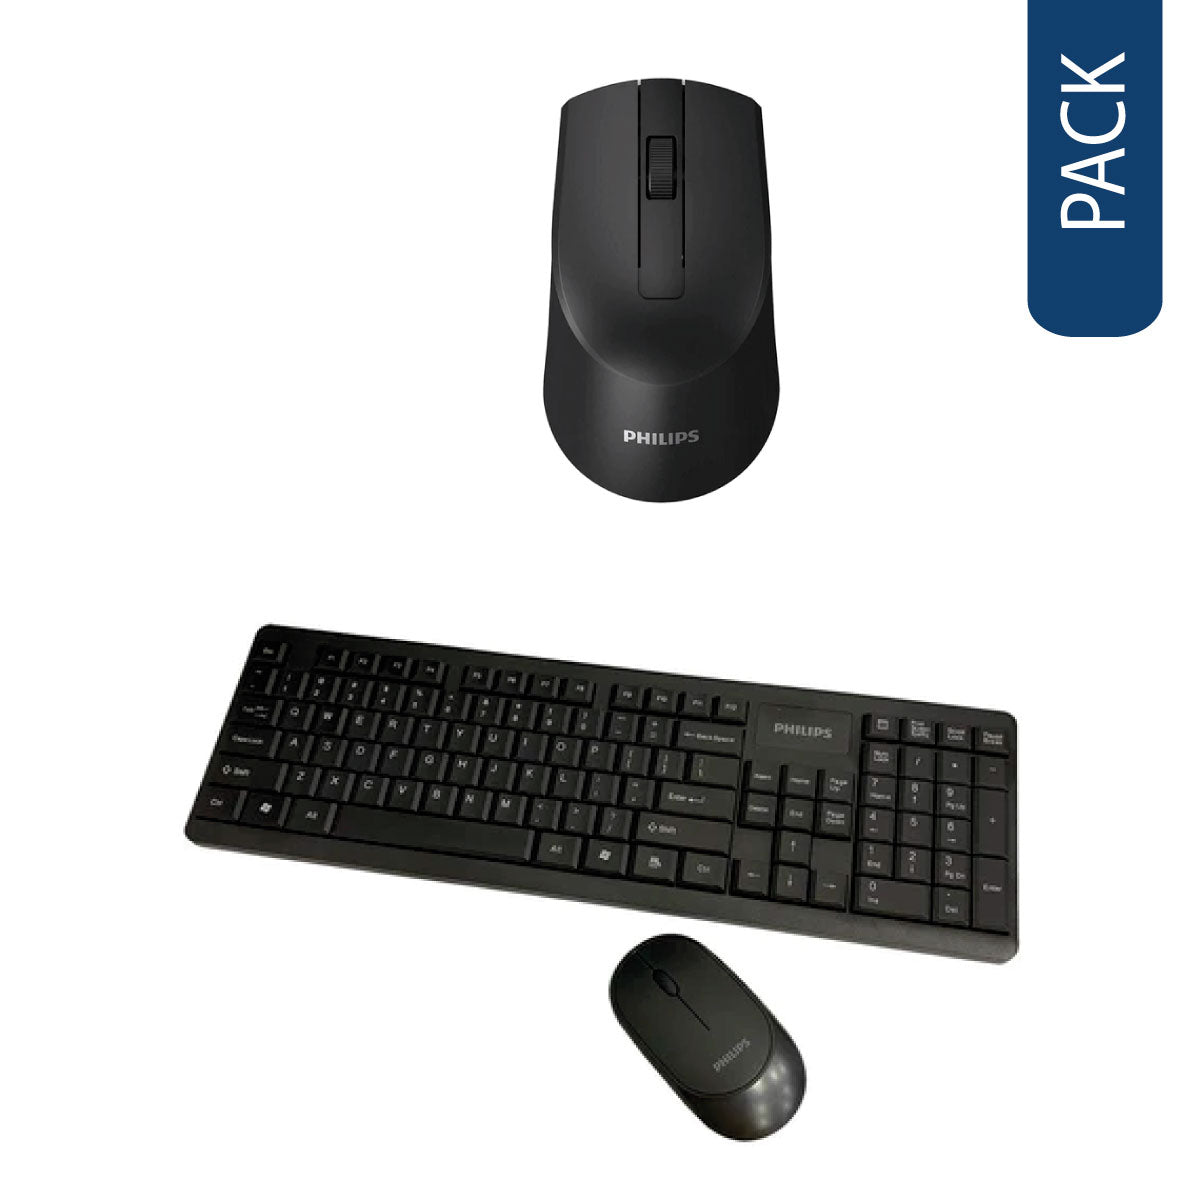 Pack de 2 teclados inalámbrico+mouse philips c314 y mouse inalámbrico m374 [Openbox]